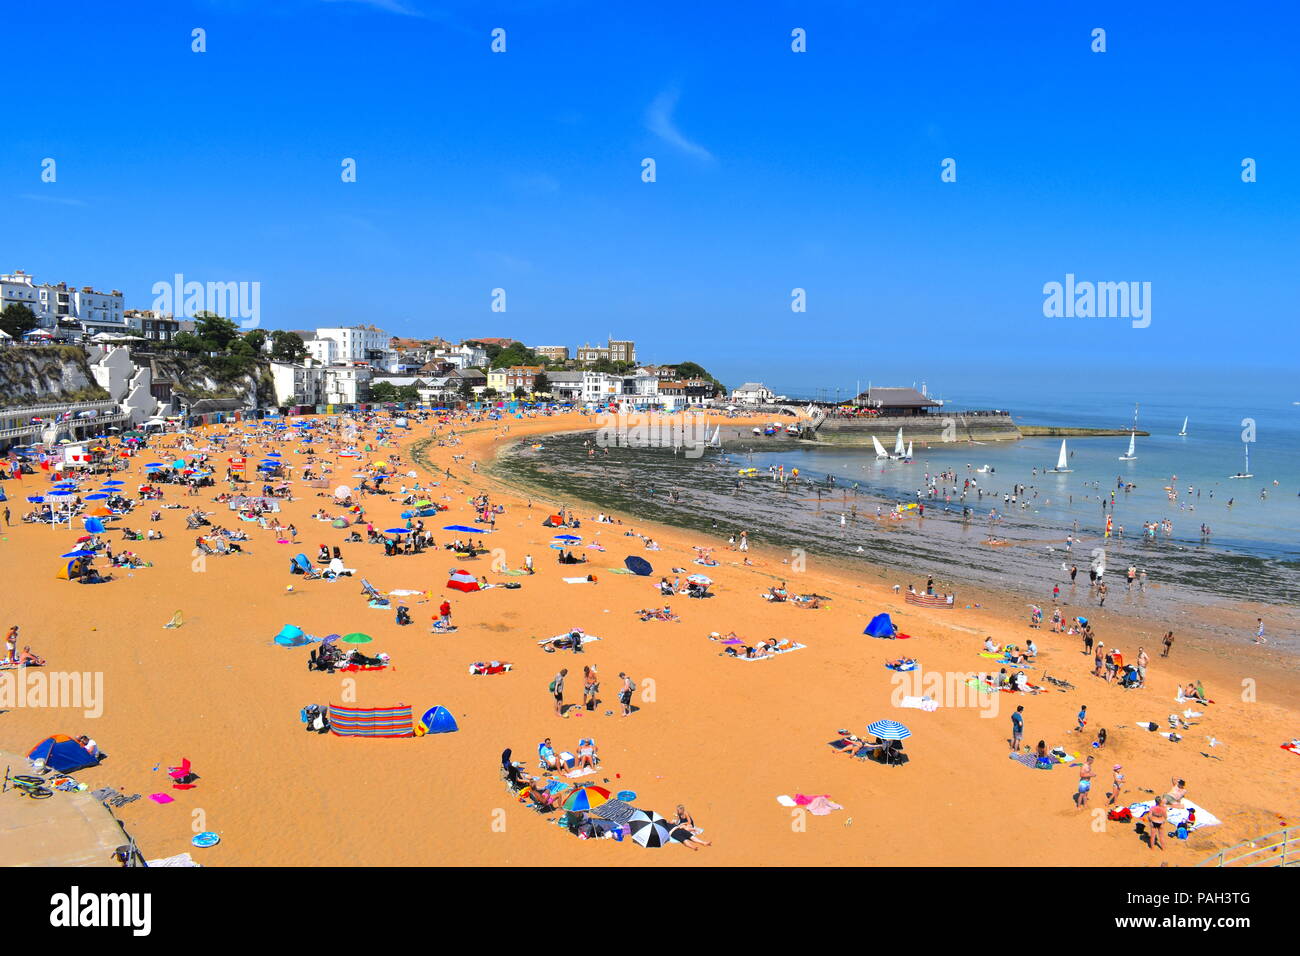 Inghilterra, Broadstairs. Pranzo Spiaggia con sun bagnanti durante la canicola estiva. Porto in background. Broadstairs, Kent, Regno Unito, Luglio 2018 Foto Stock